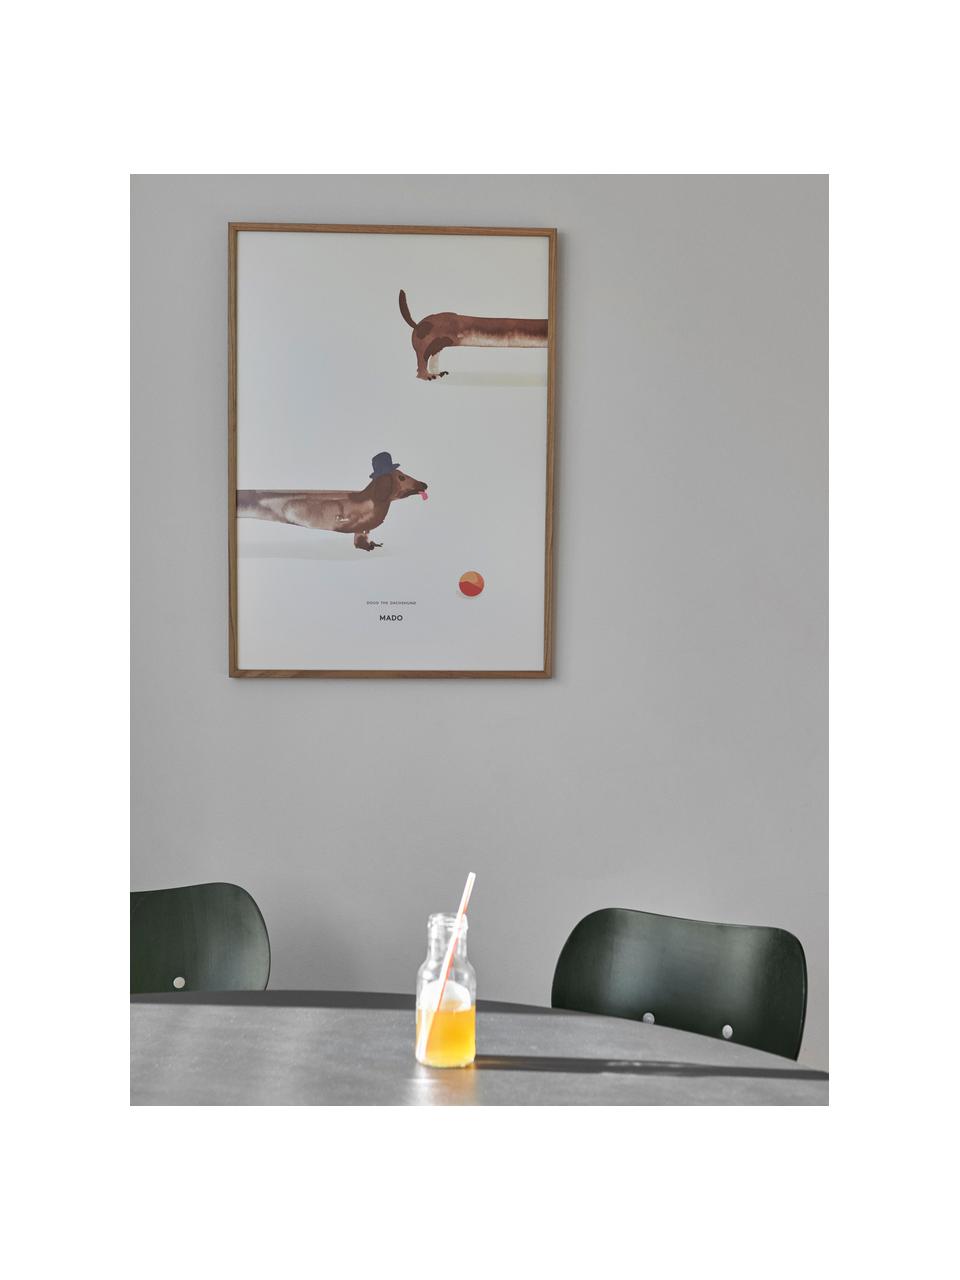 Poster Doug the Dachshund, 230 g mat geraffineerd papier, digitale print met 12 kleuren.

Dit product is gemaakt van duurzaam geproduceerd, FSC®-gecertificeerd hout, Gebroken wit, bruin, B 50 x H 70 cm